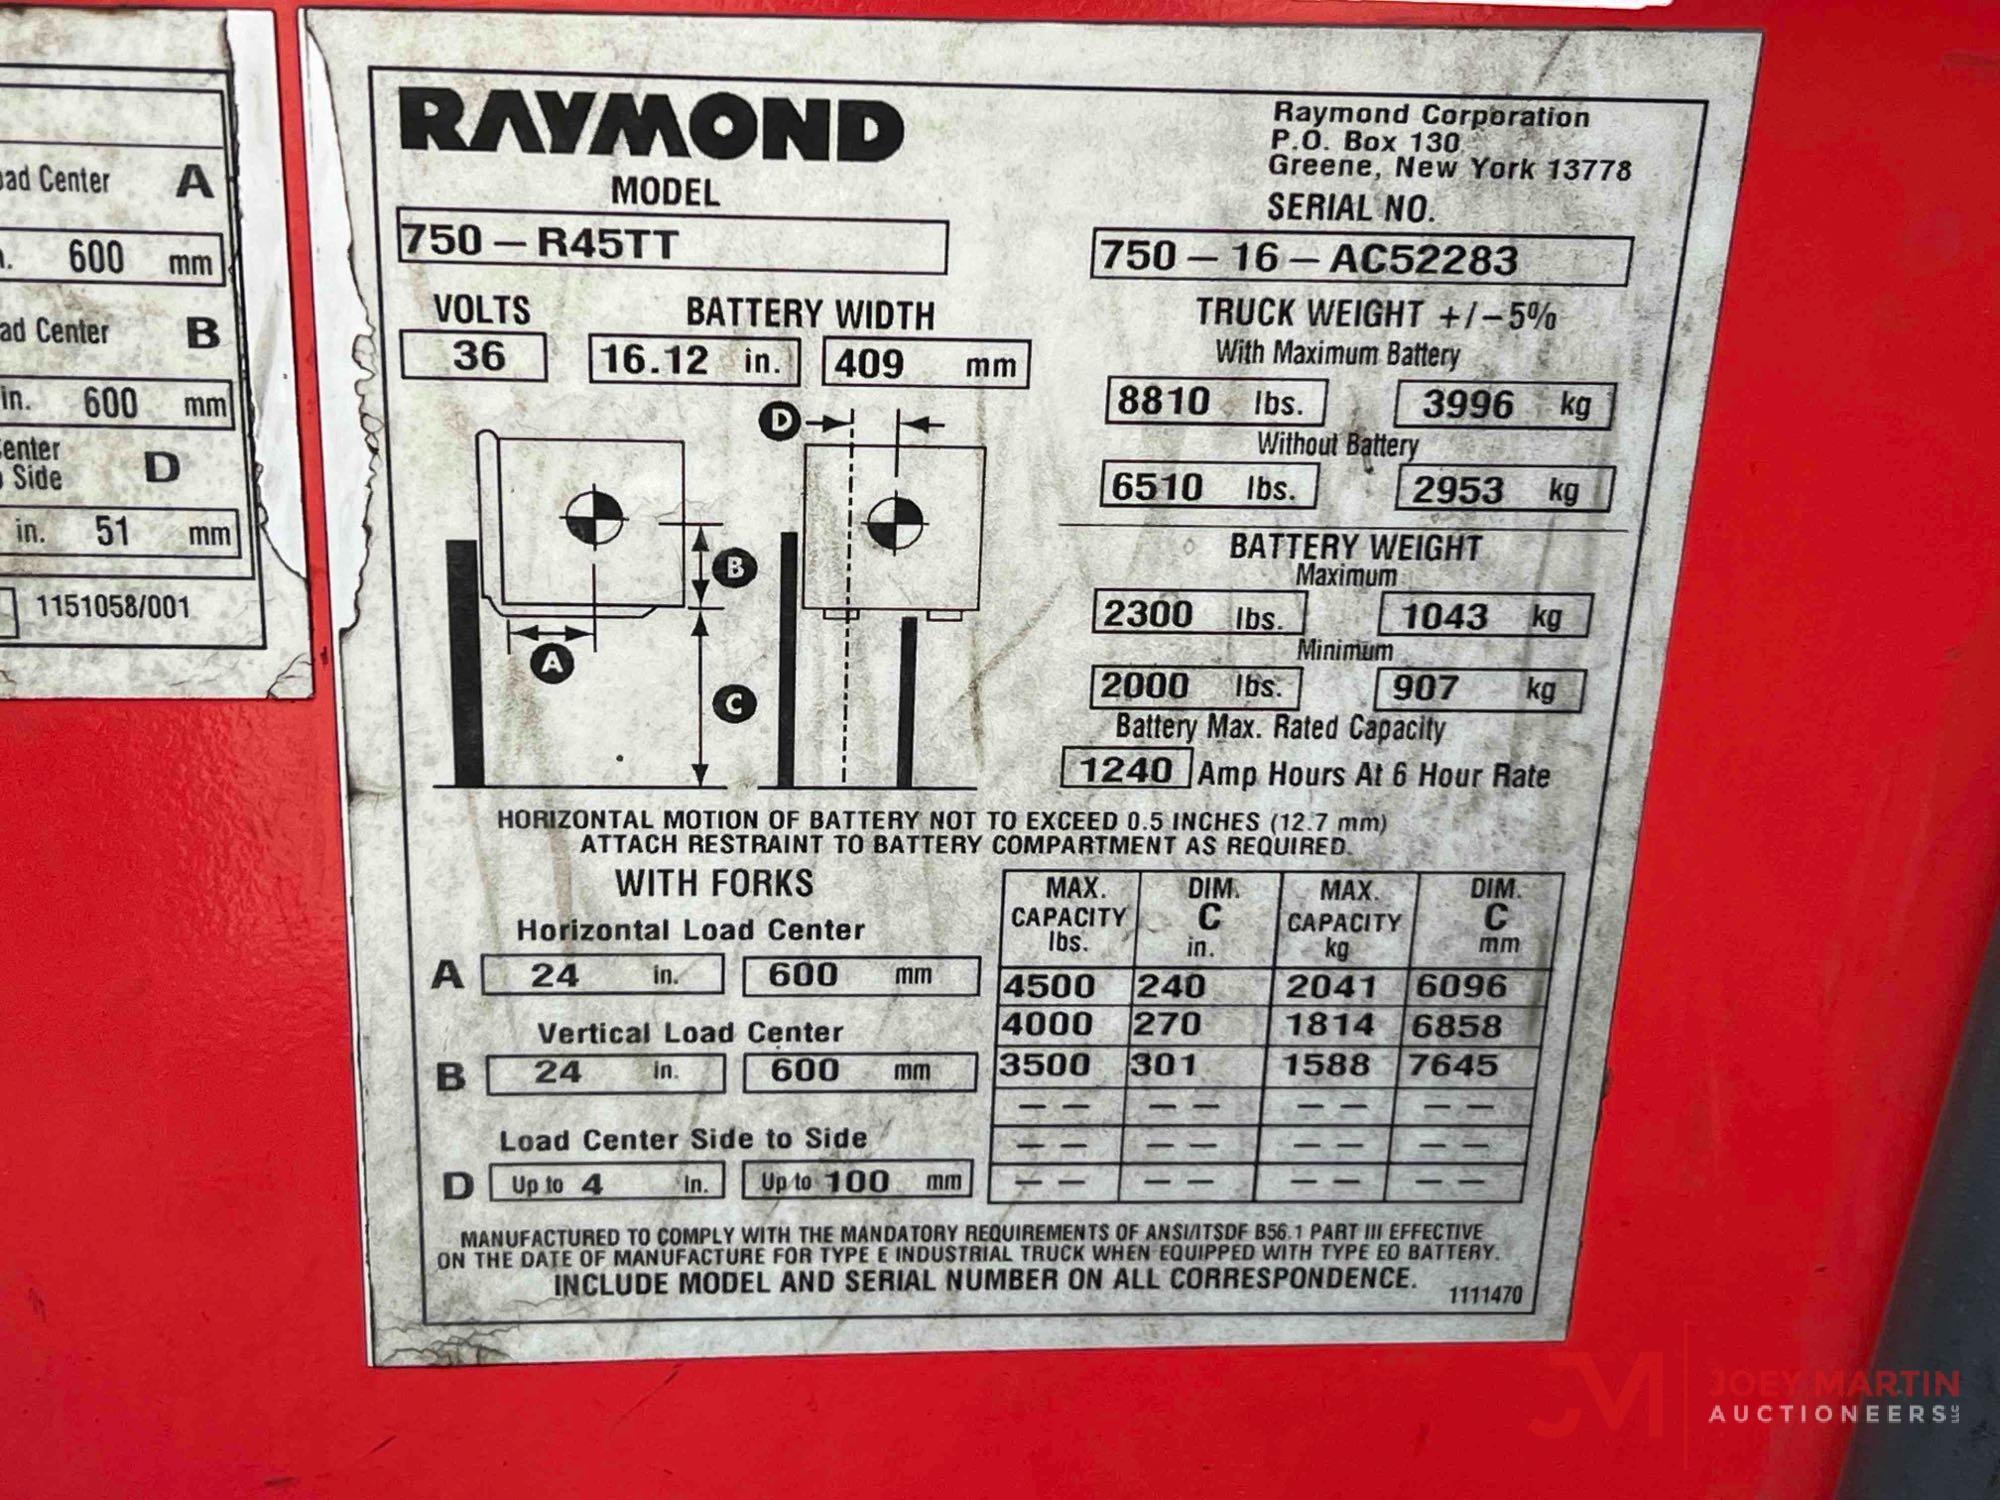 RAYMOND 750-R45TT REACH FORKLIFT